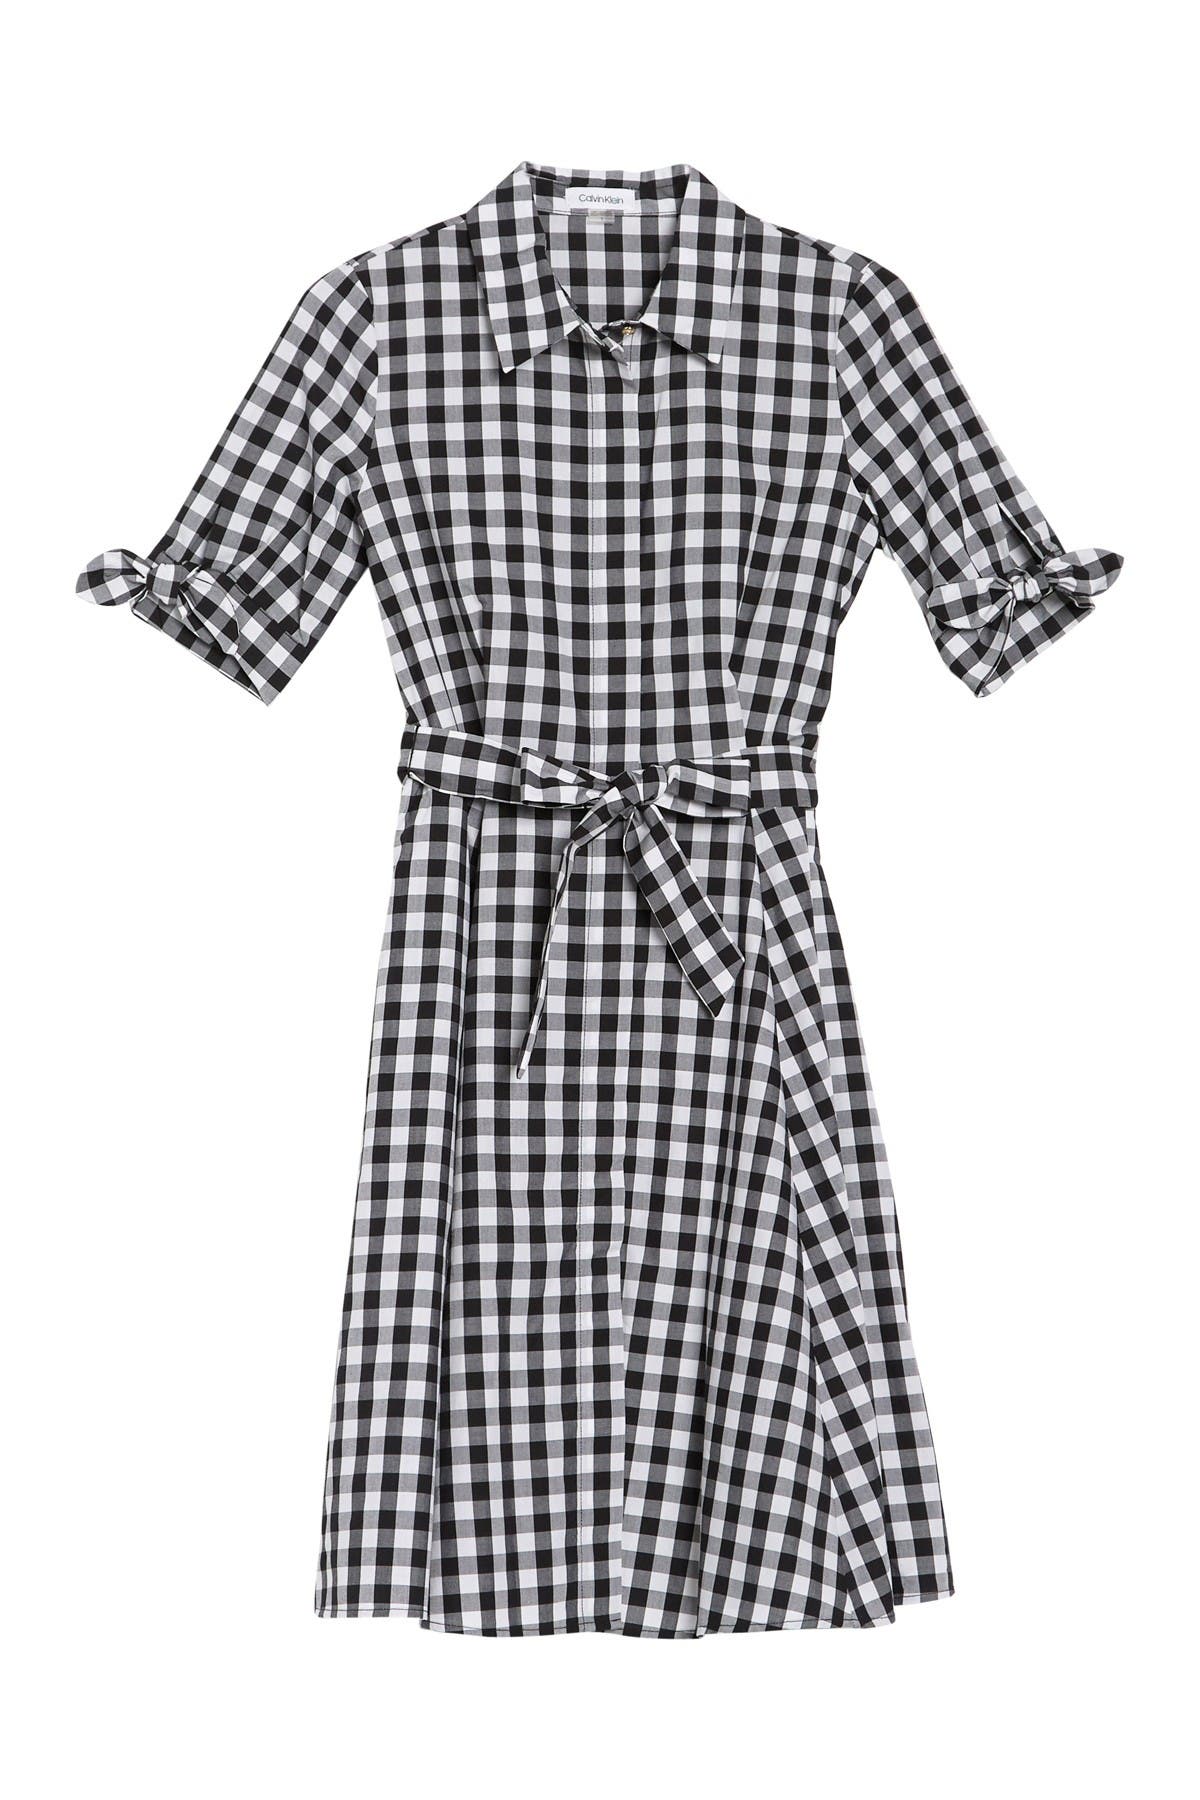 Calvin Klein | Short Sleeve Checkered 